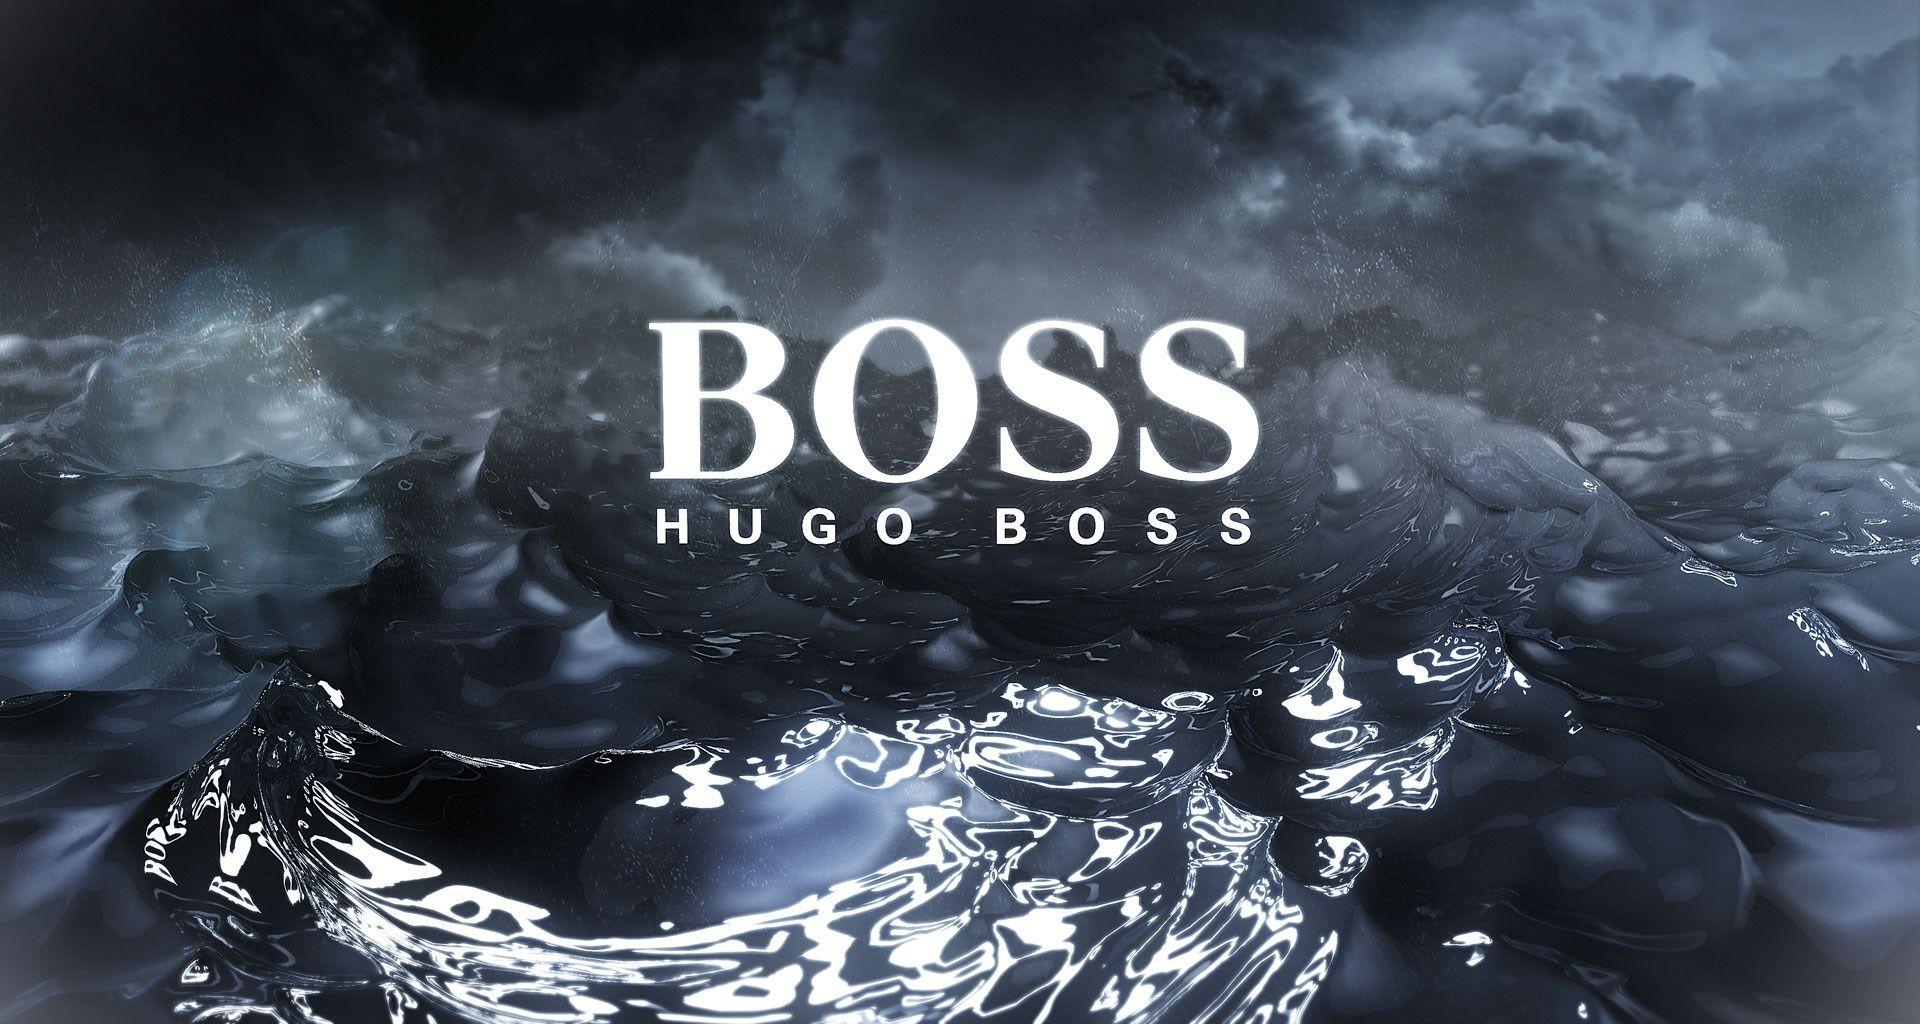 Hugo Boss Wallpaper Free Hugo Boss Background